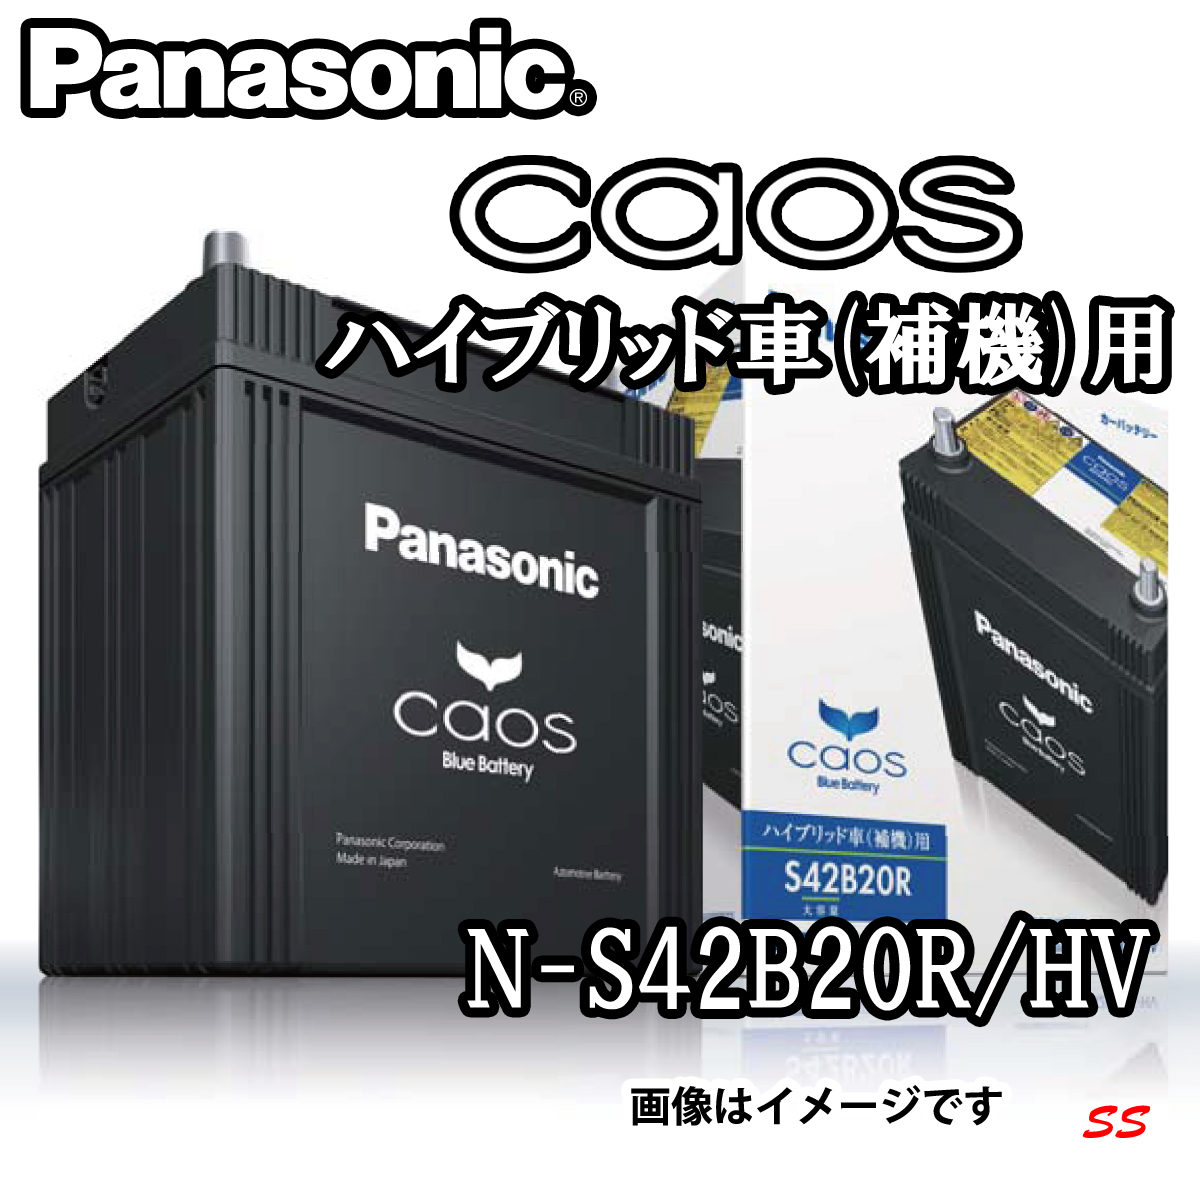 Panasonic caos カオス ハイブリッド車用 N-S42B20R/HV(S34B20R/HV標準 